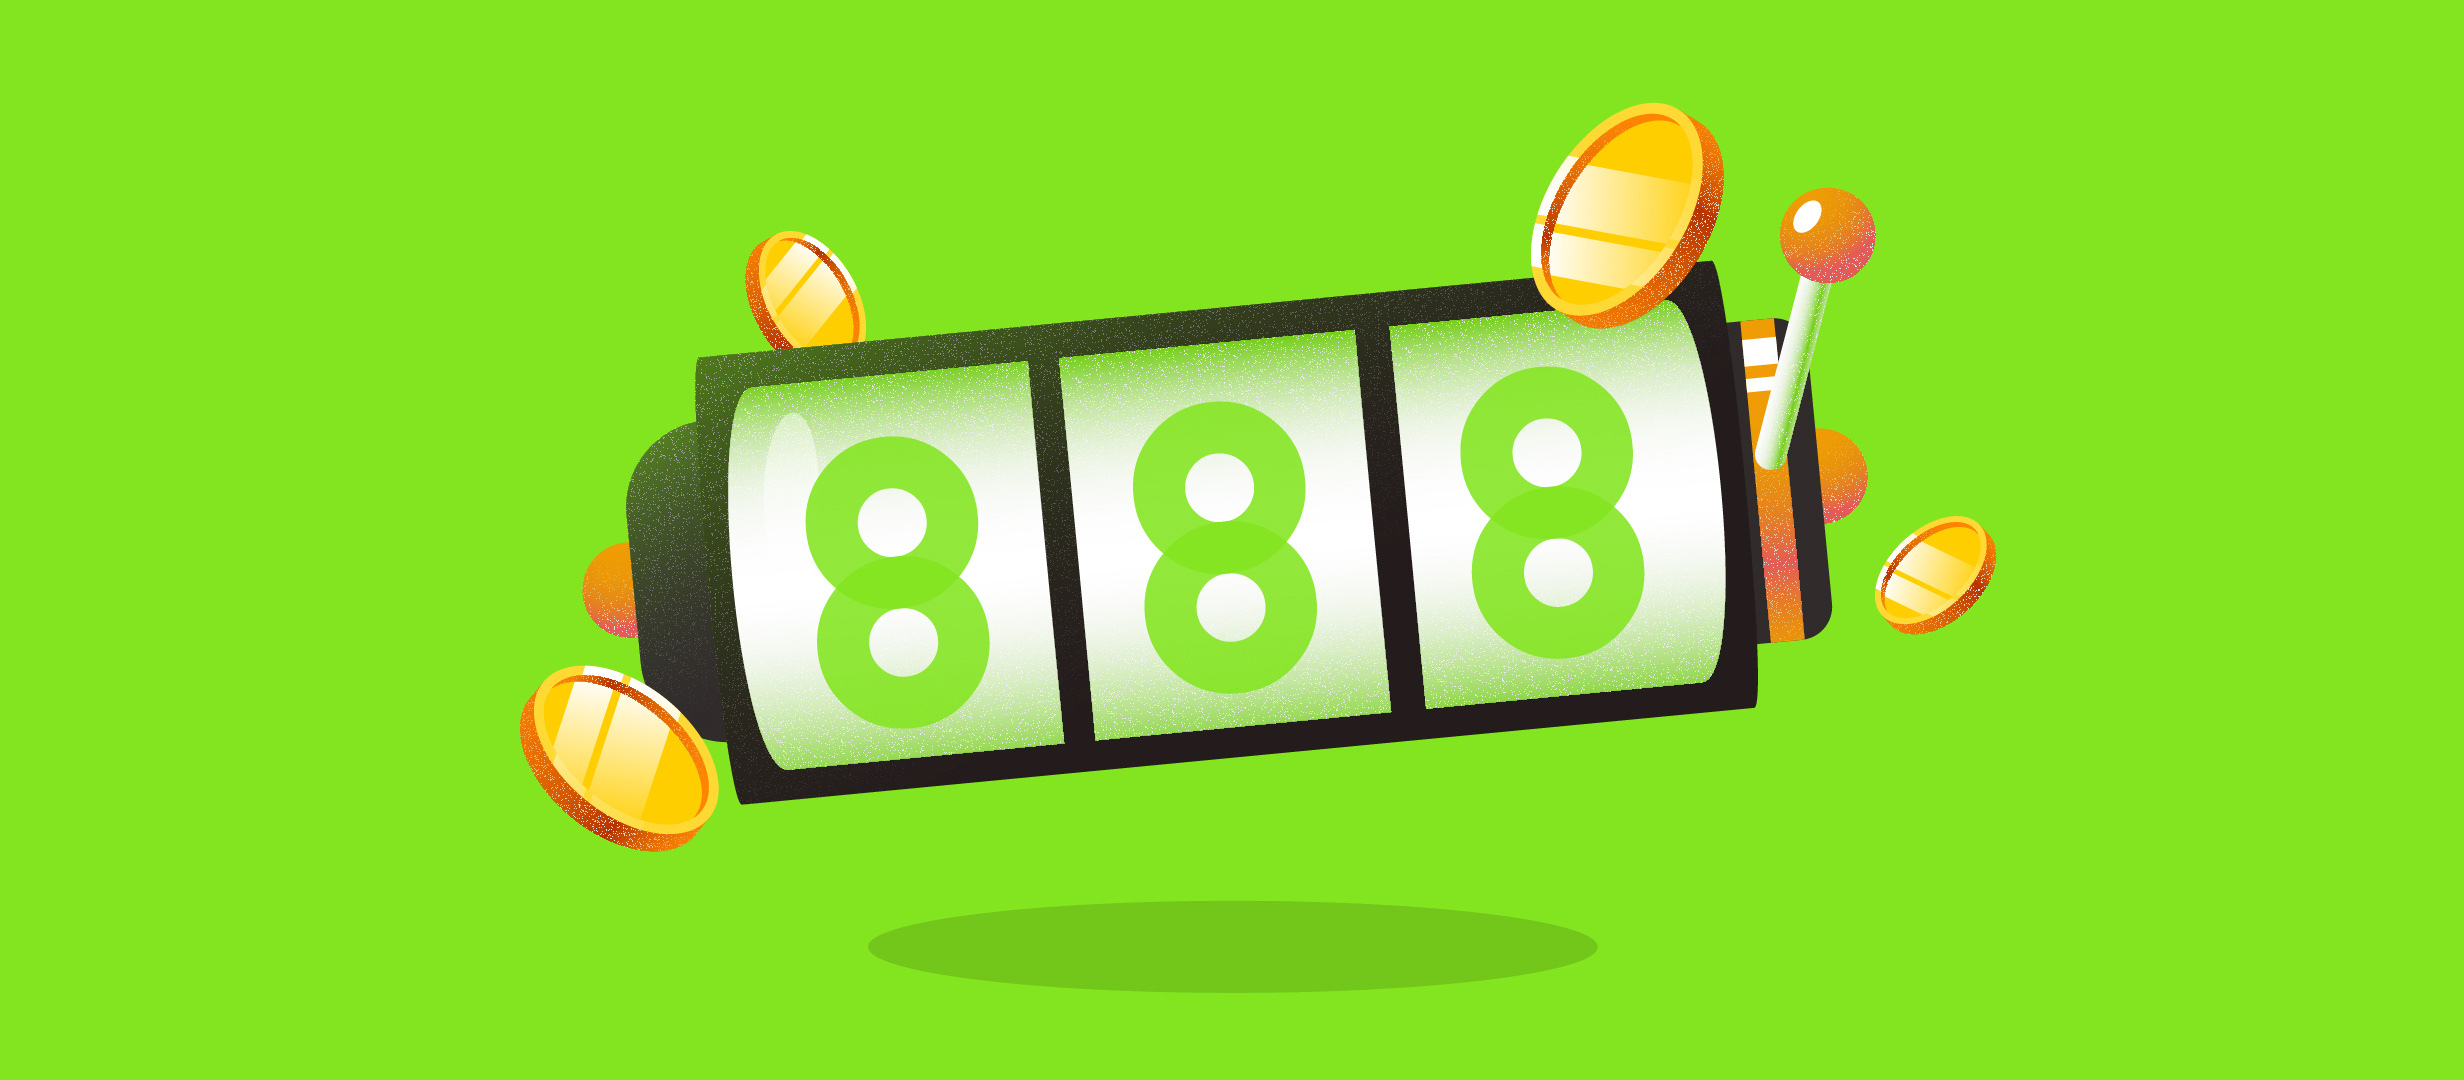 888 Casino - Care este varianta ideala atunci cand te joci la pacanele?